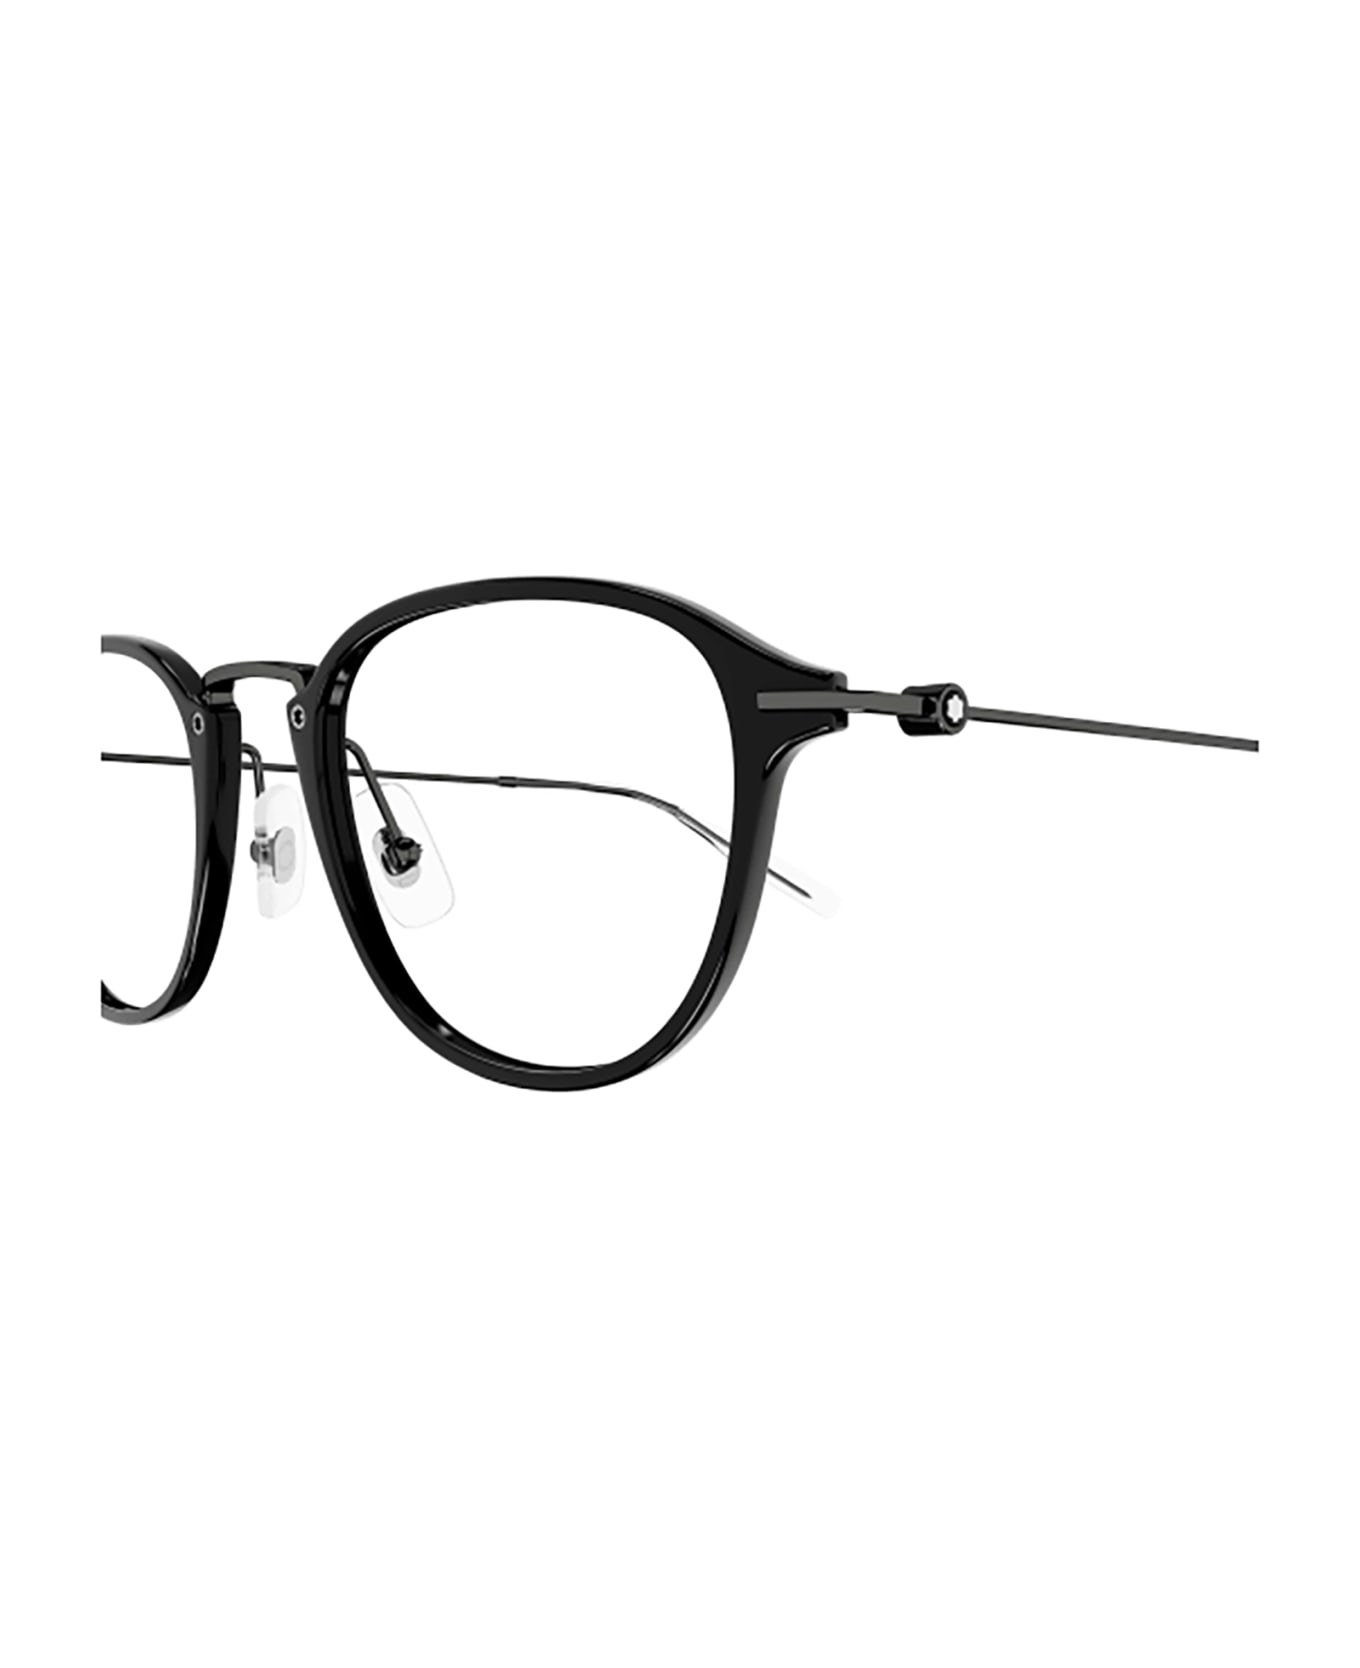 Montblanc MB0155O Eyewear - Black Ruthenium Trans アイウェア